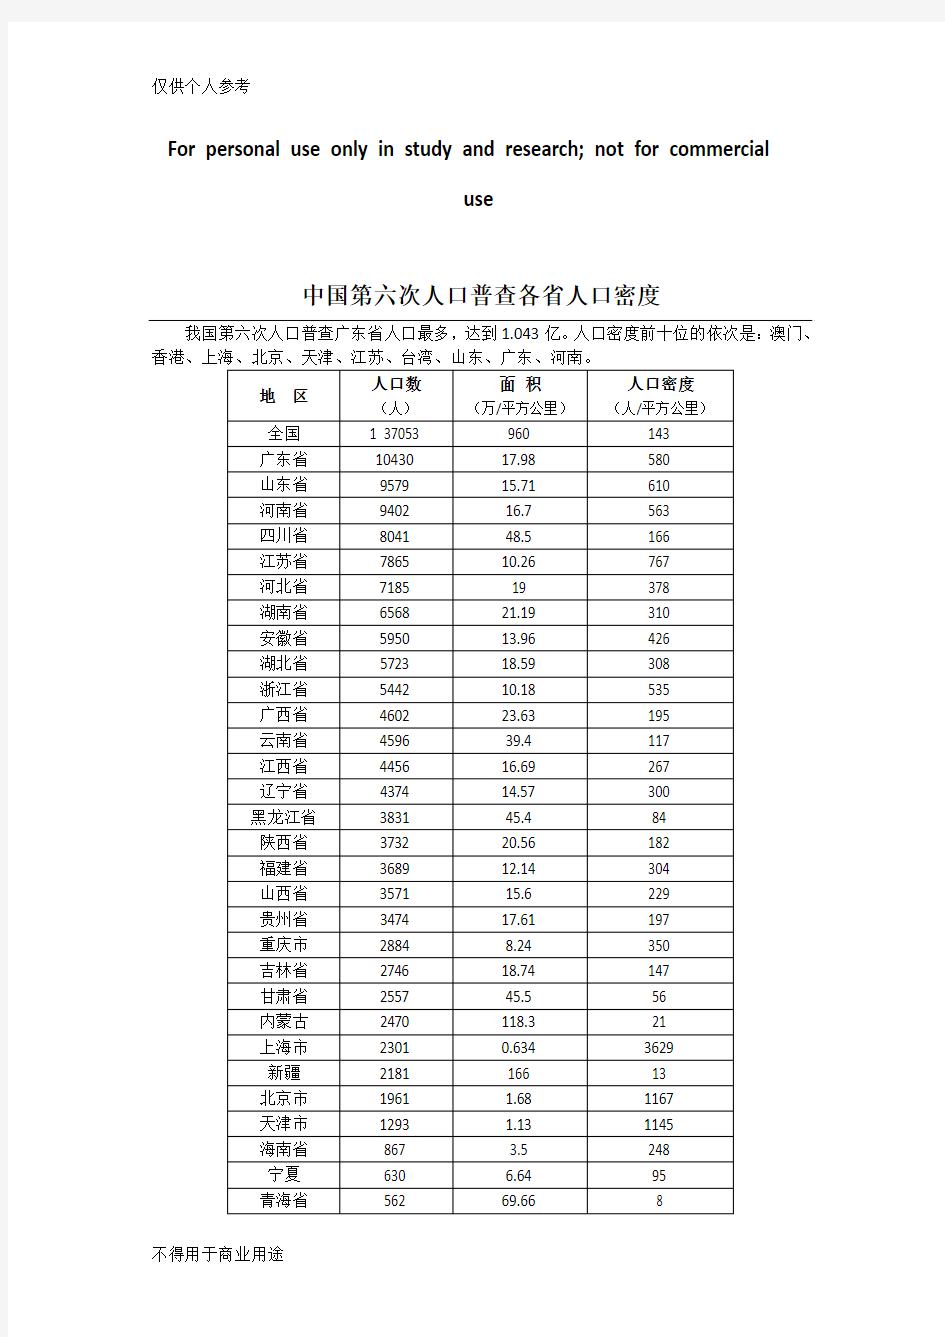 中国各省人口密度排名(含部分国家)